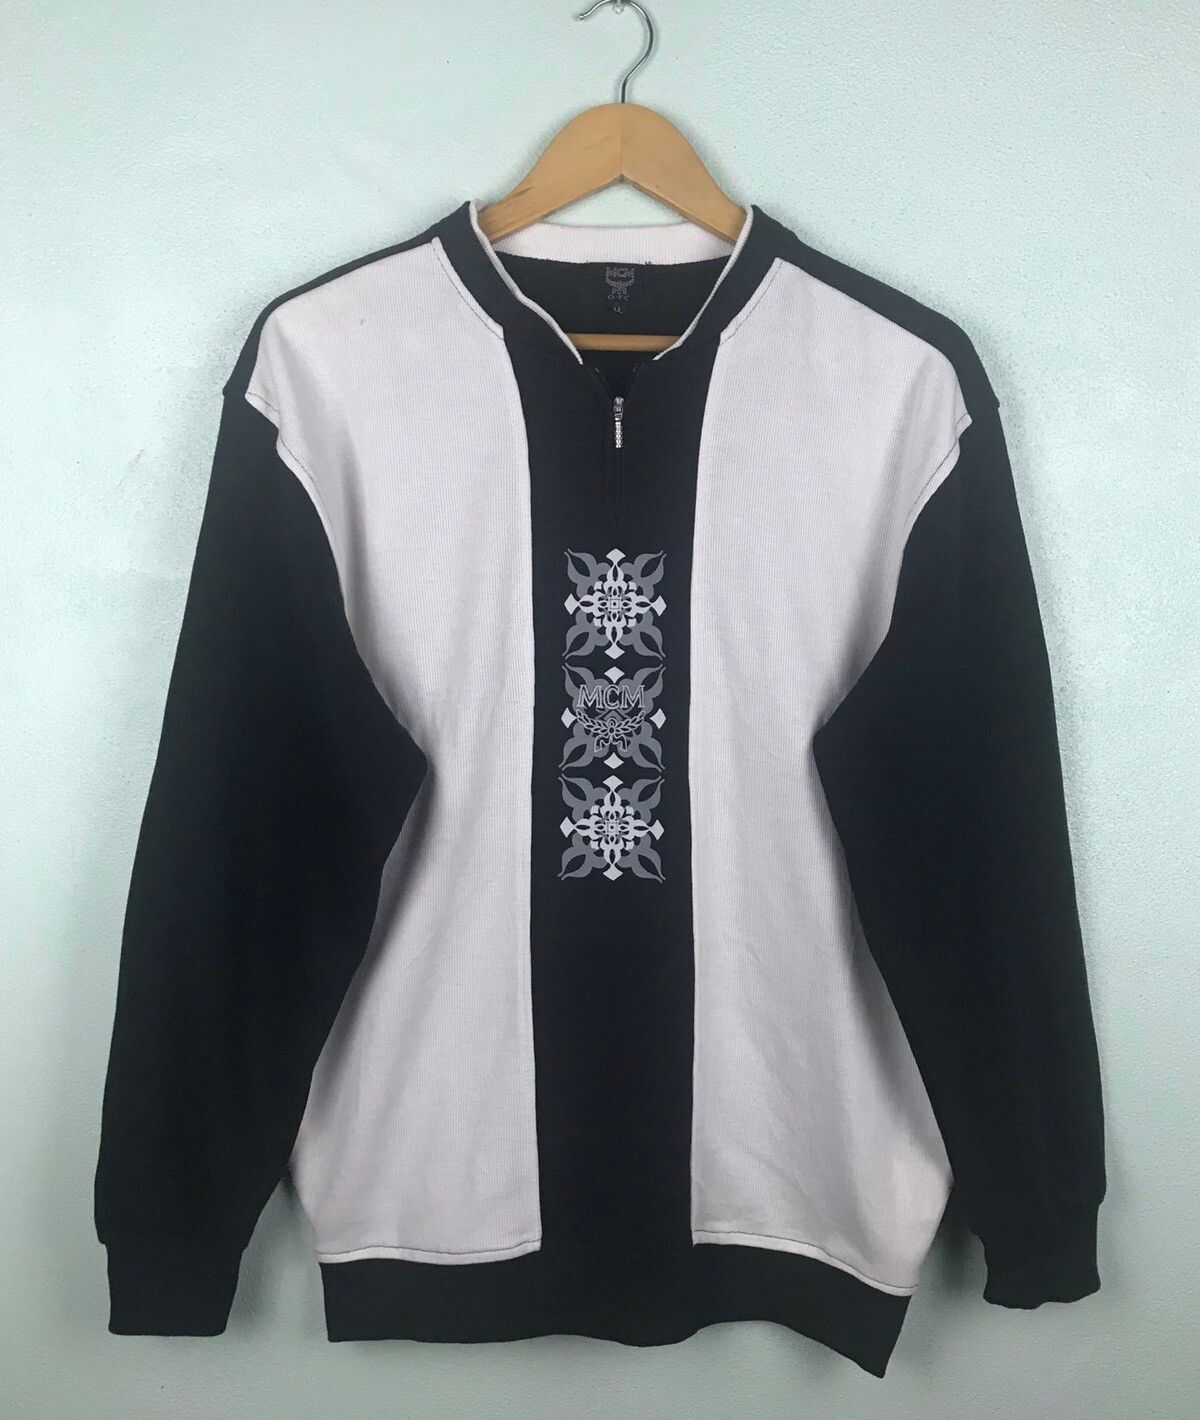 Modern Creation Munchen OTC Jumper sweater - GH0120 - 1